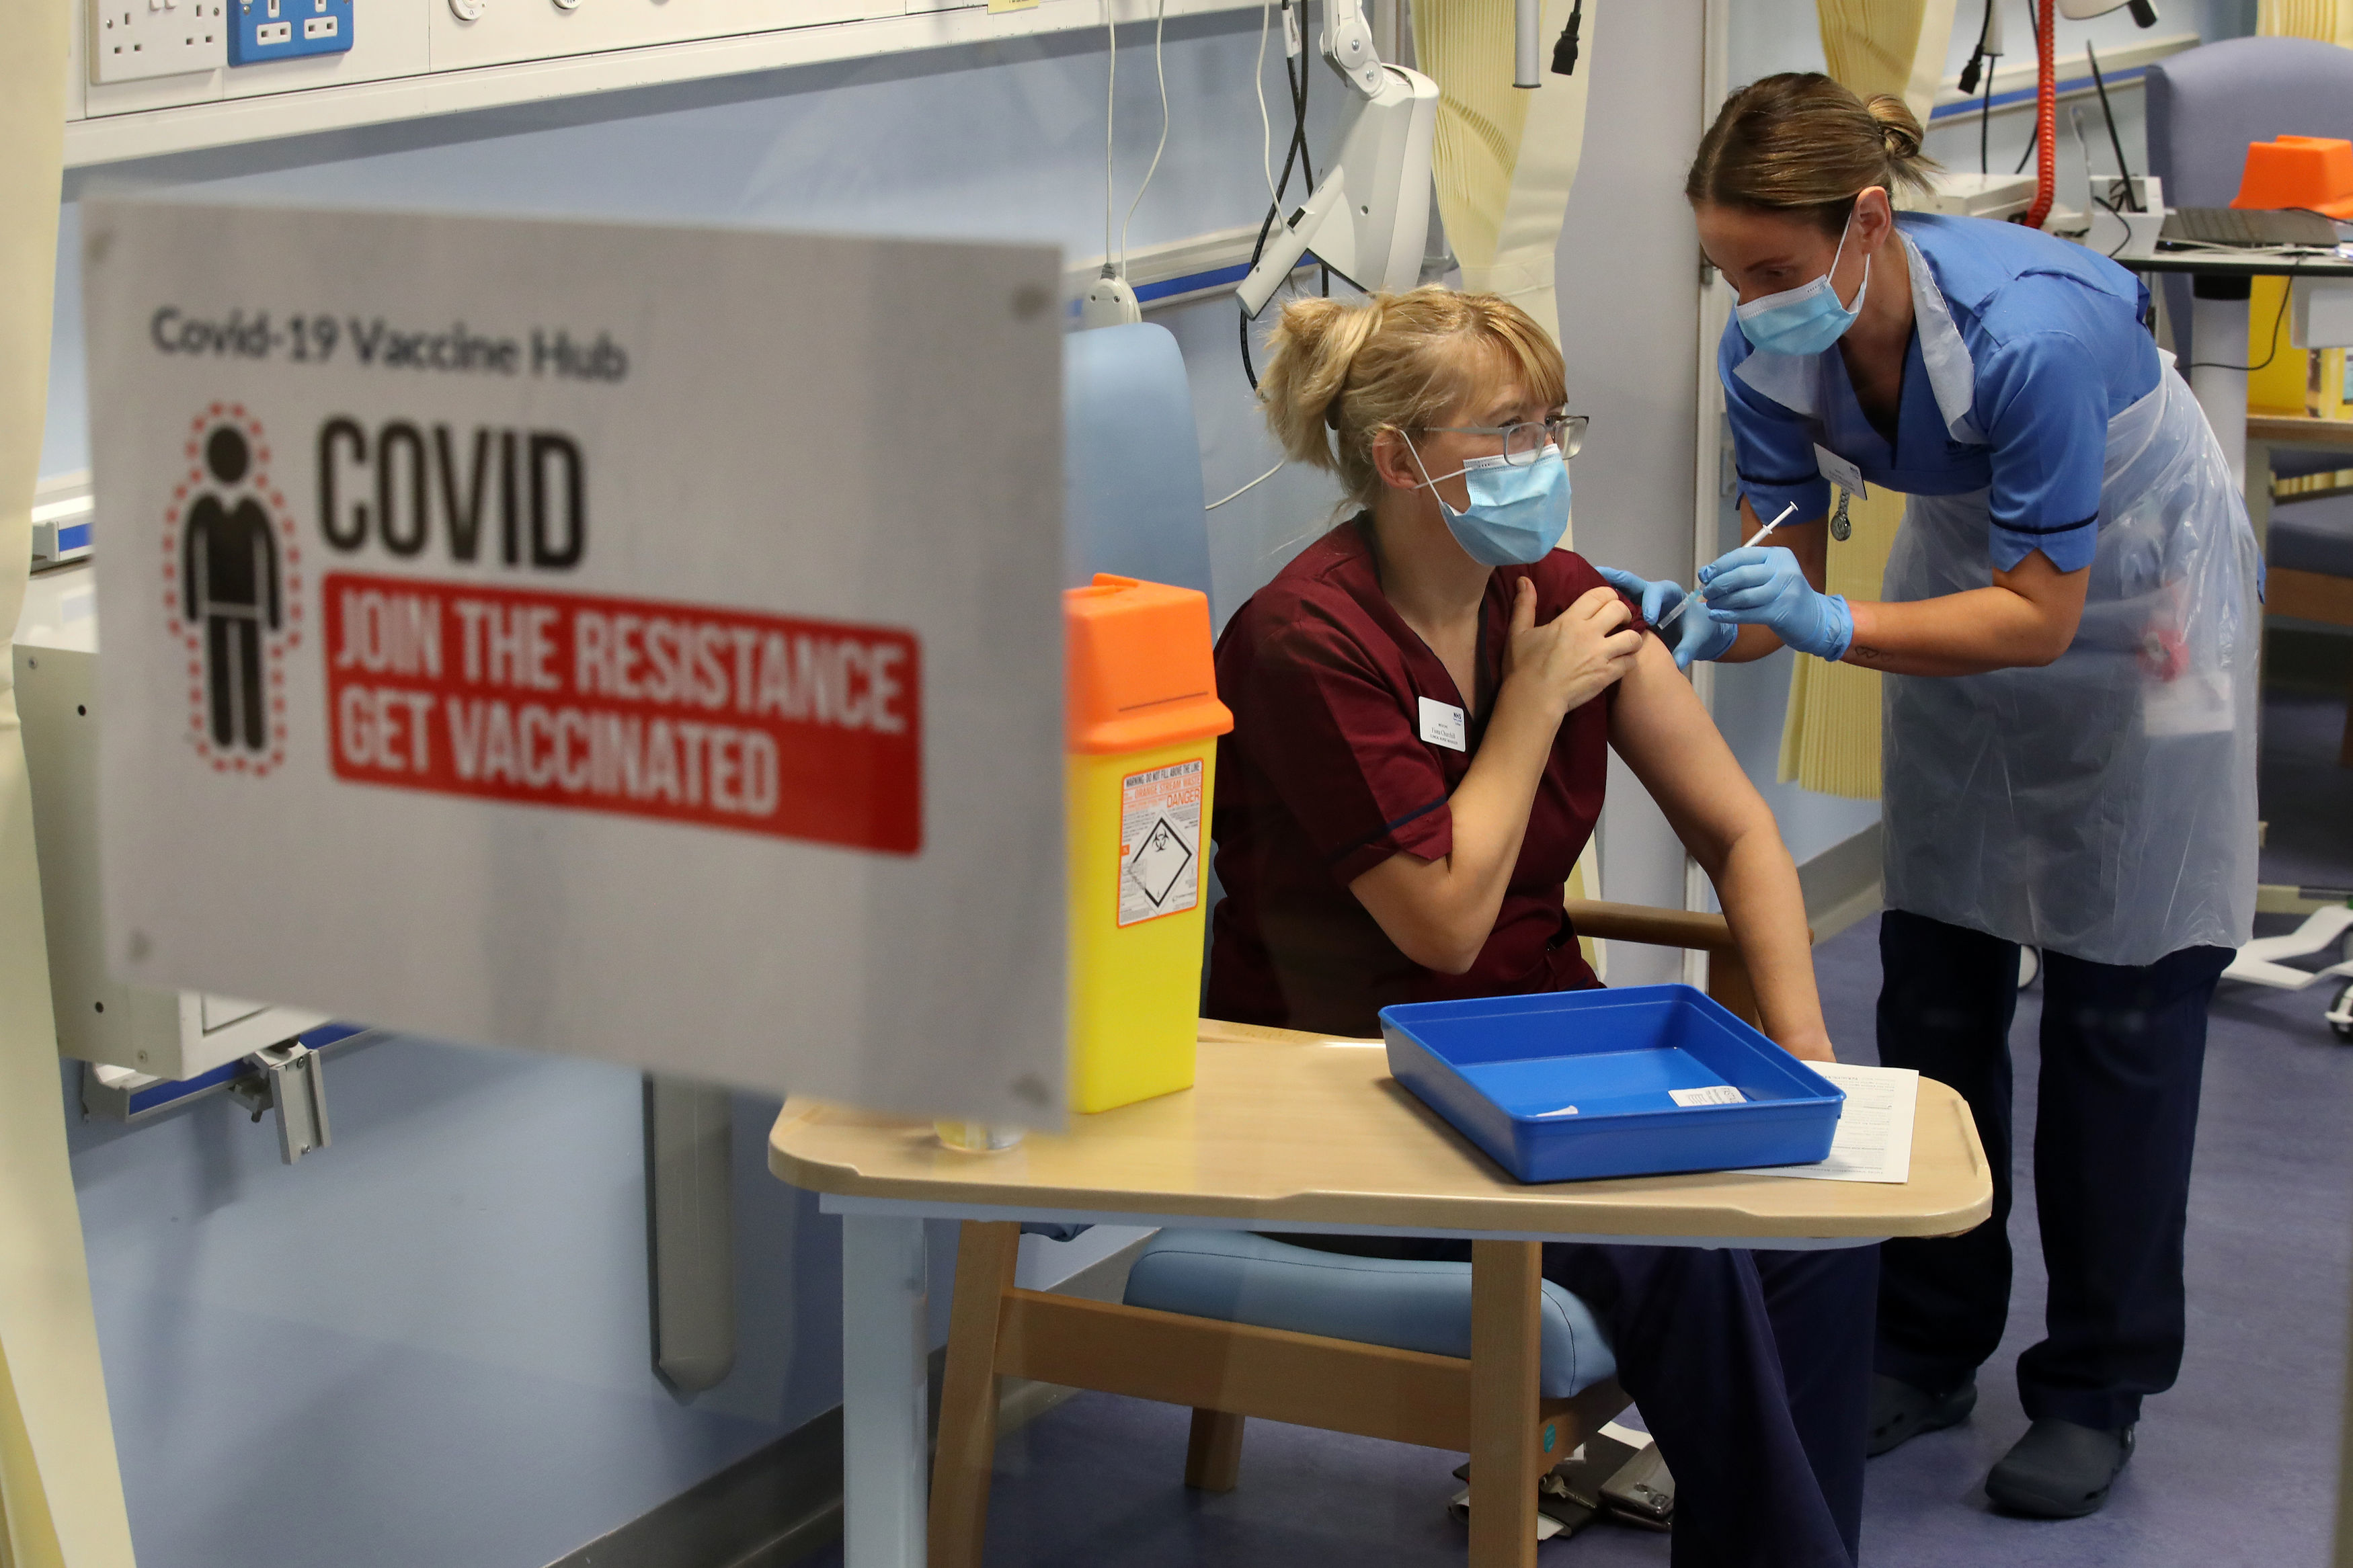 Milyen mellékhatásai vannak a nyugati vakcináknak? És az orosznak?